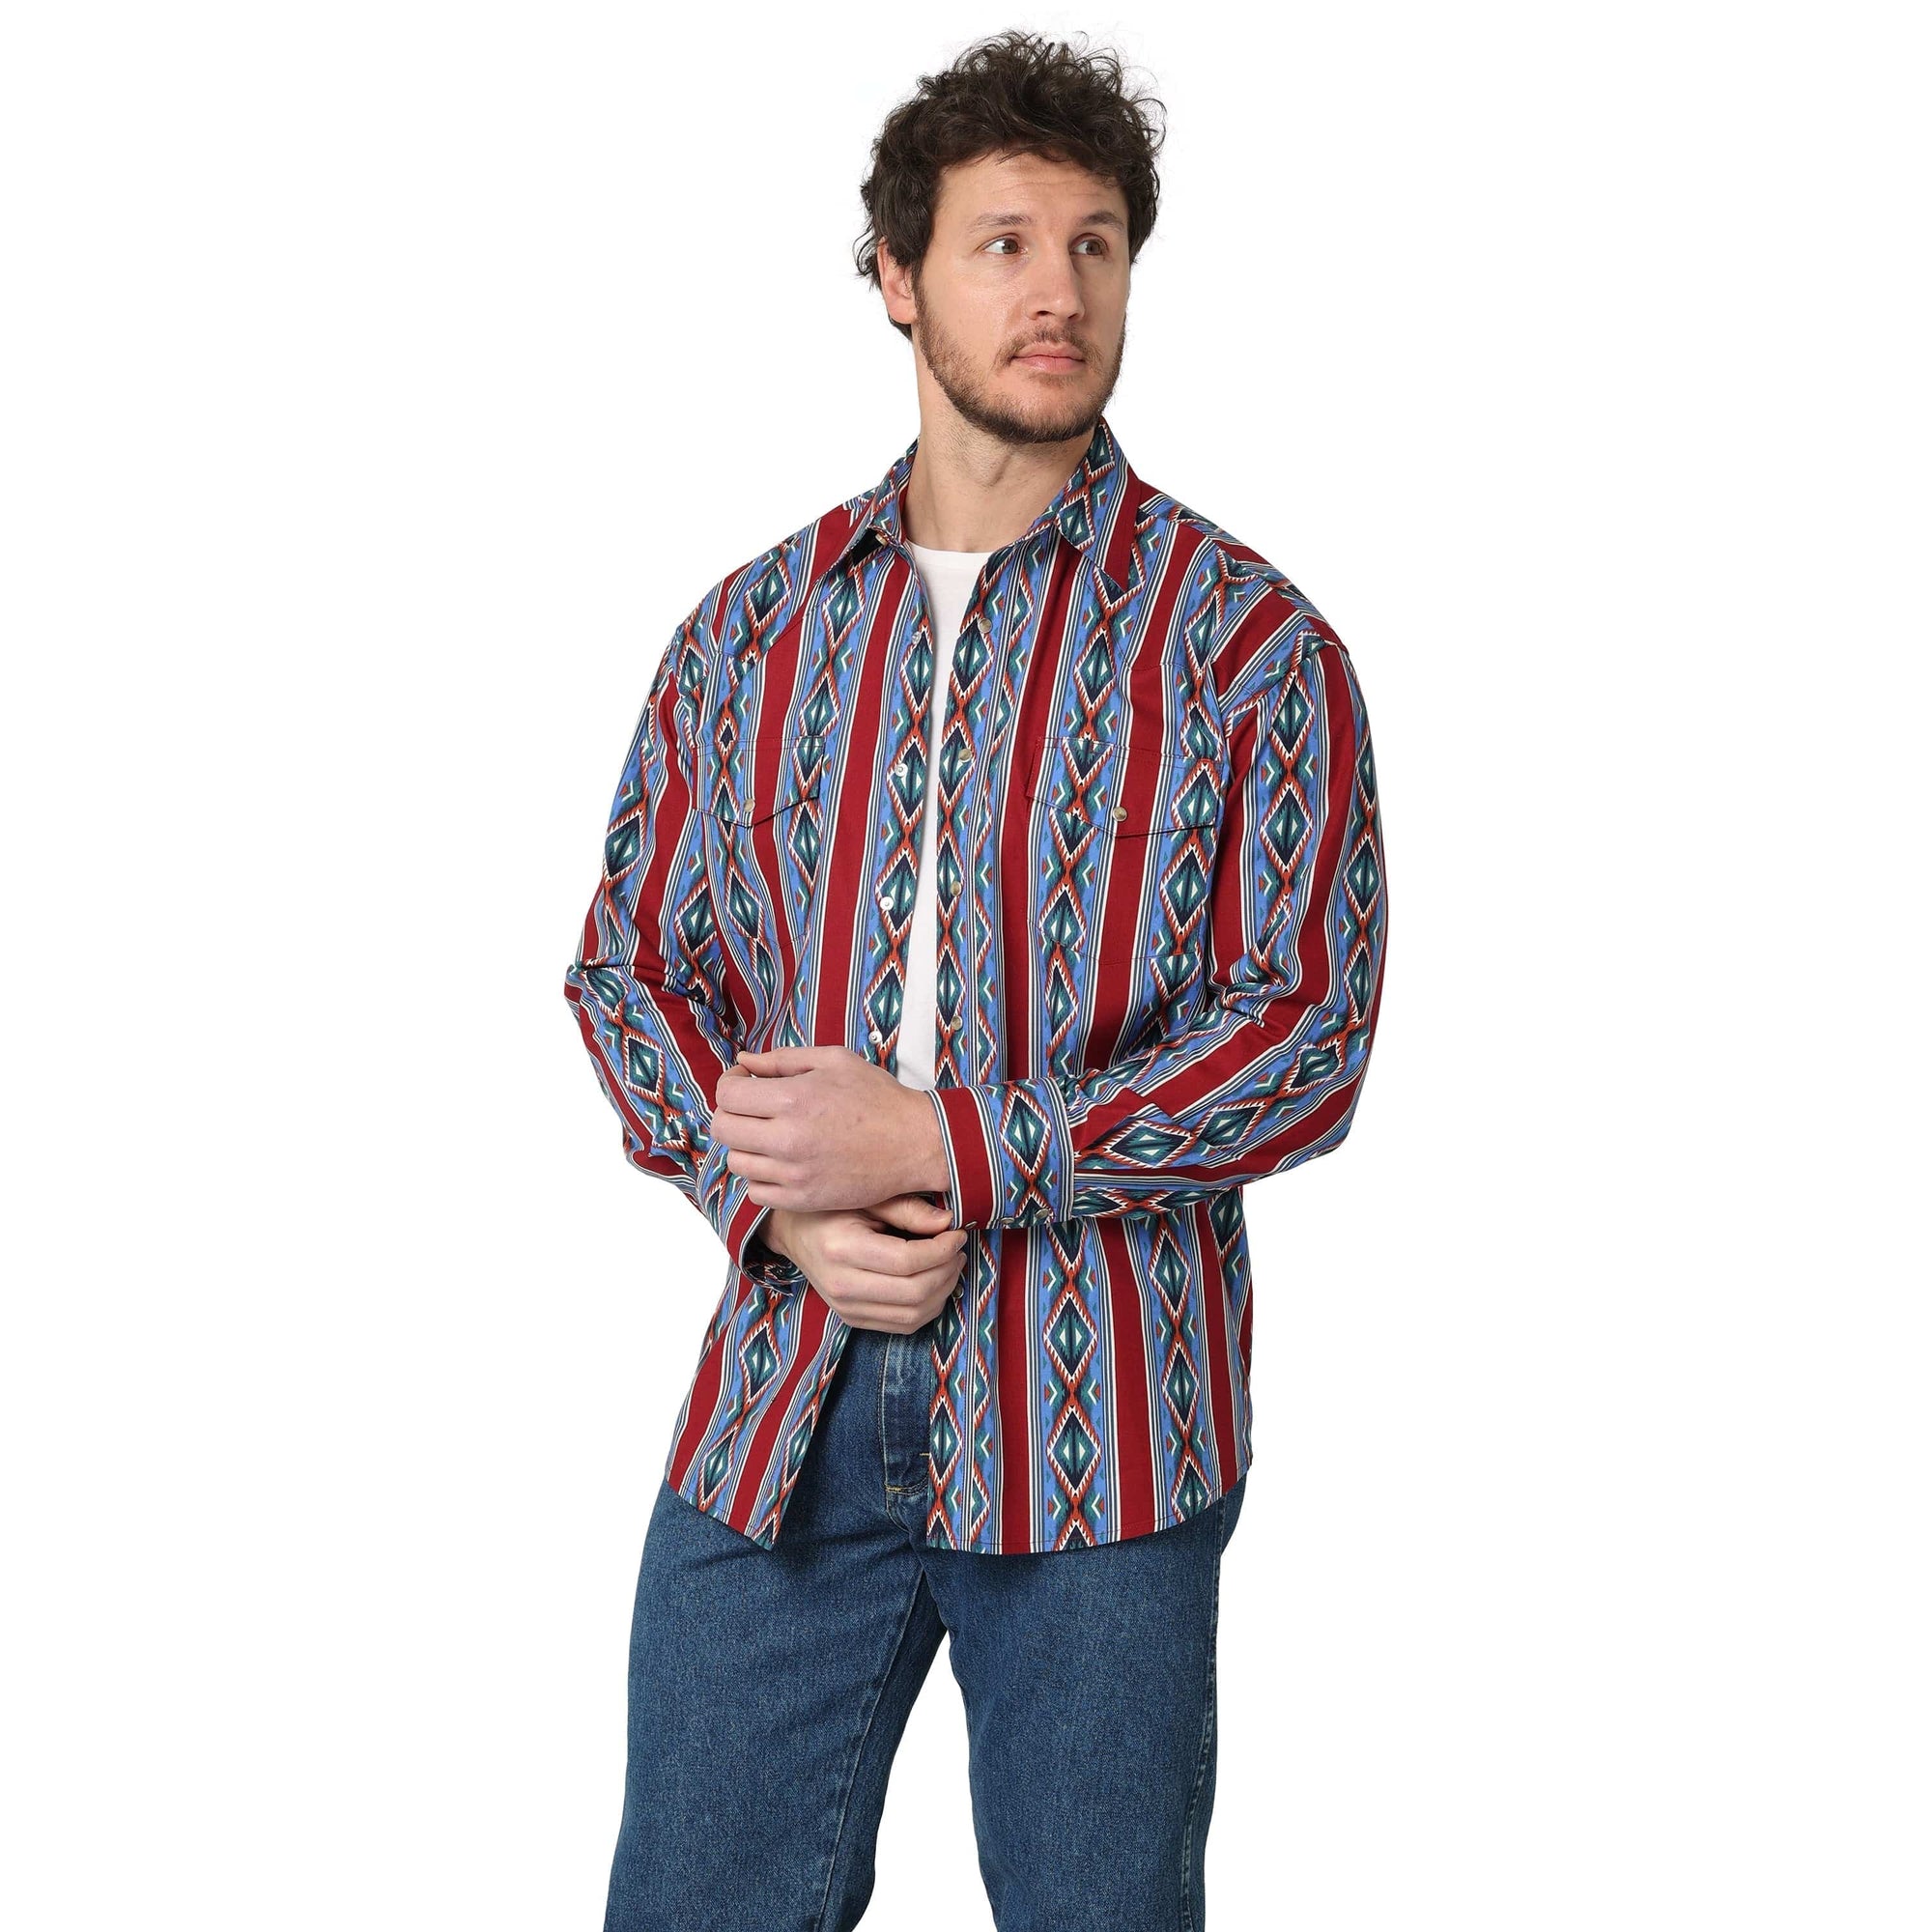 WRANGLER JEANS Shirts Wrangler Men's Checotah Burgundy Blue Multi Aztec Stripes Long Sleeve Western Shirt 112314908